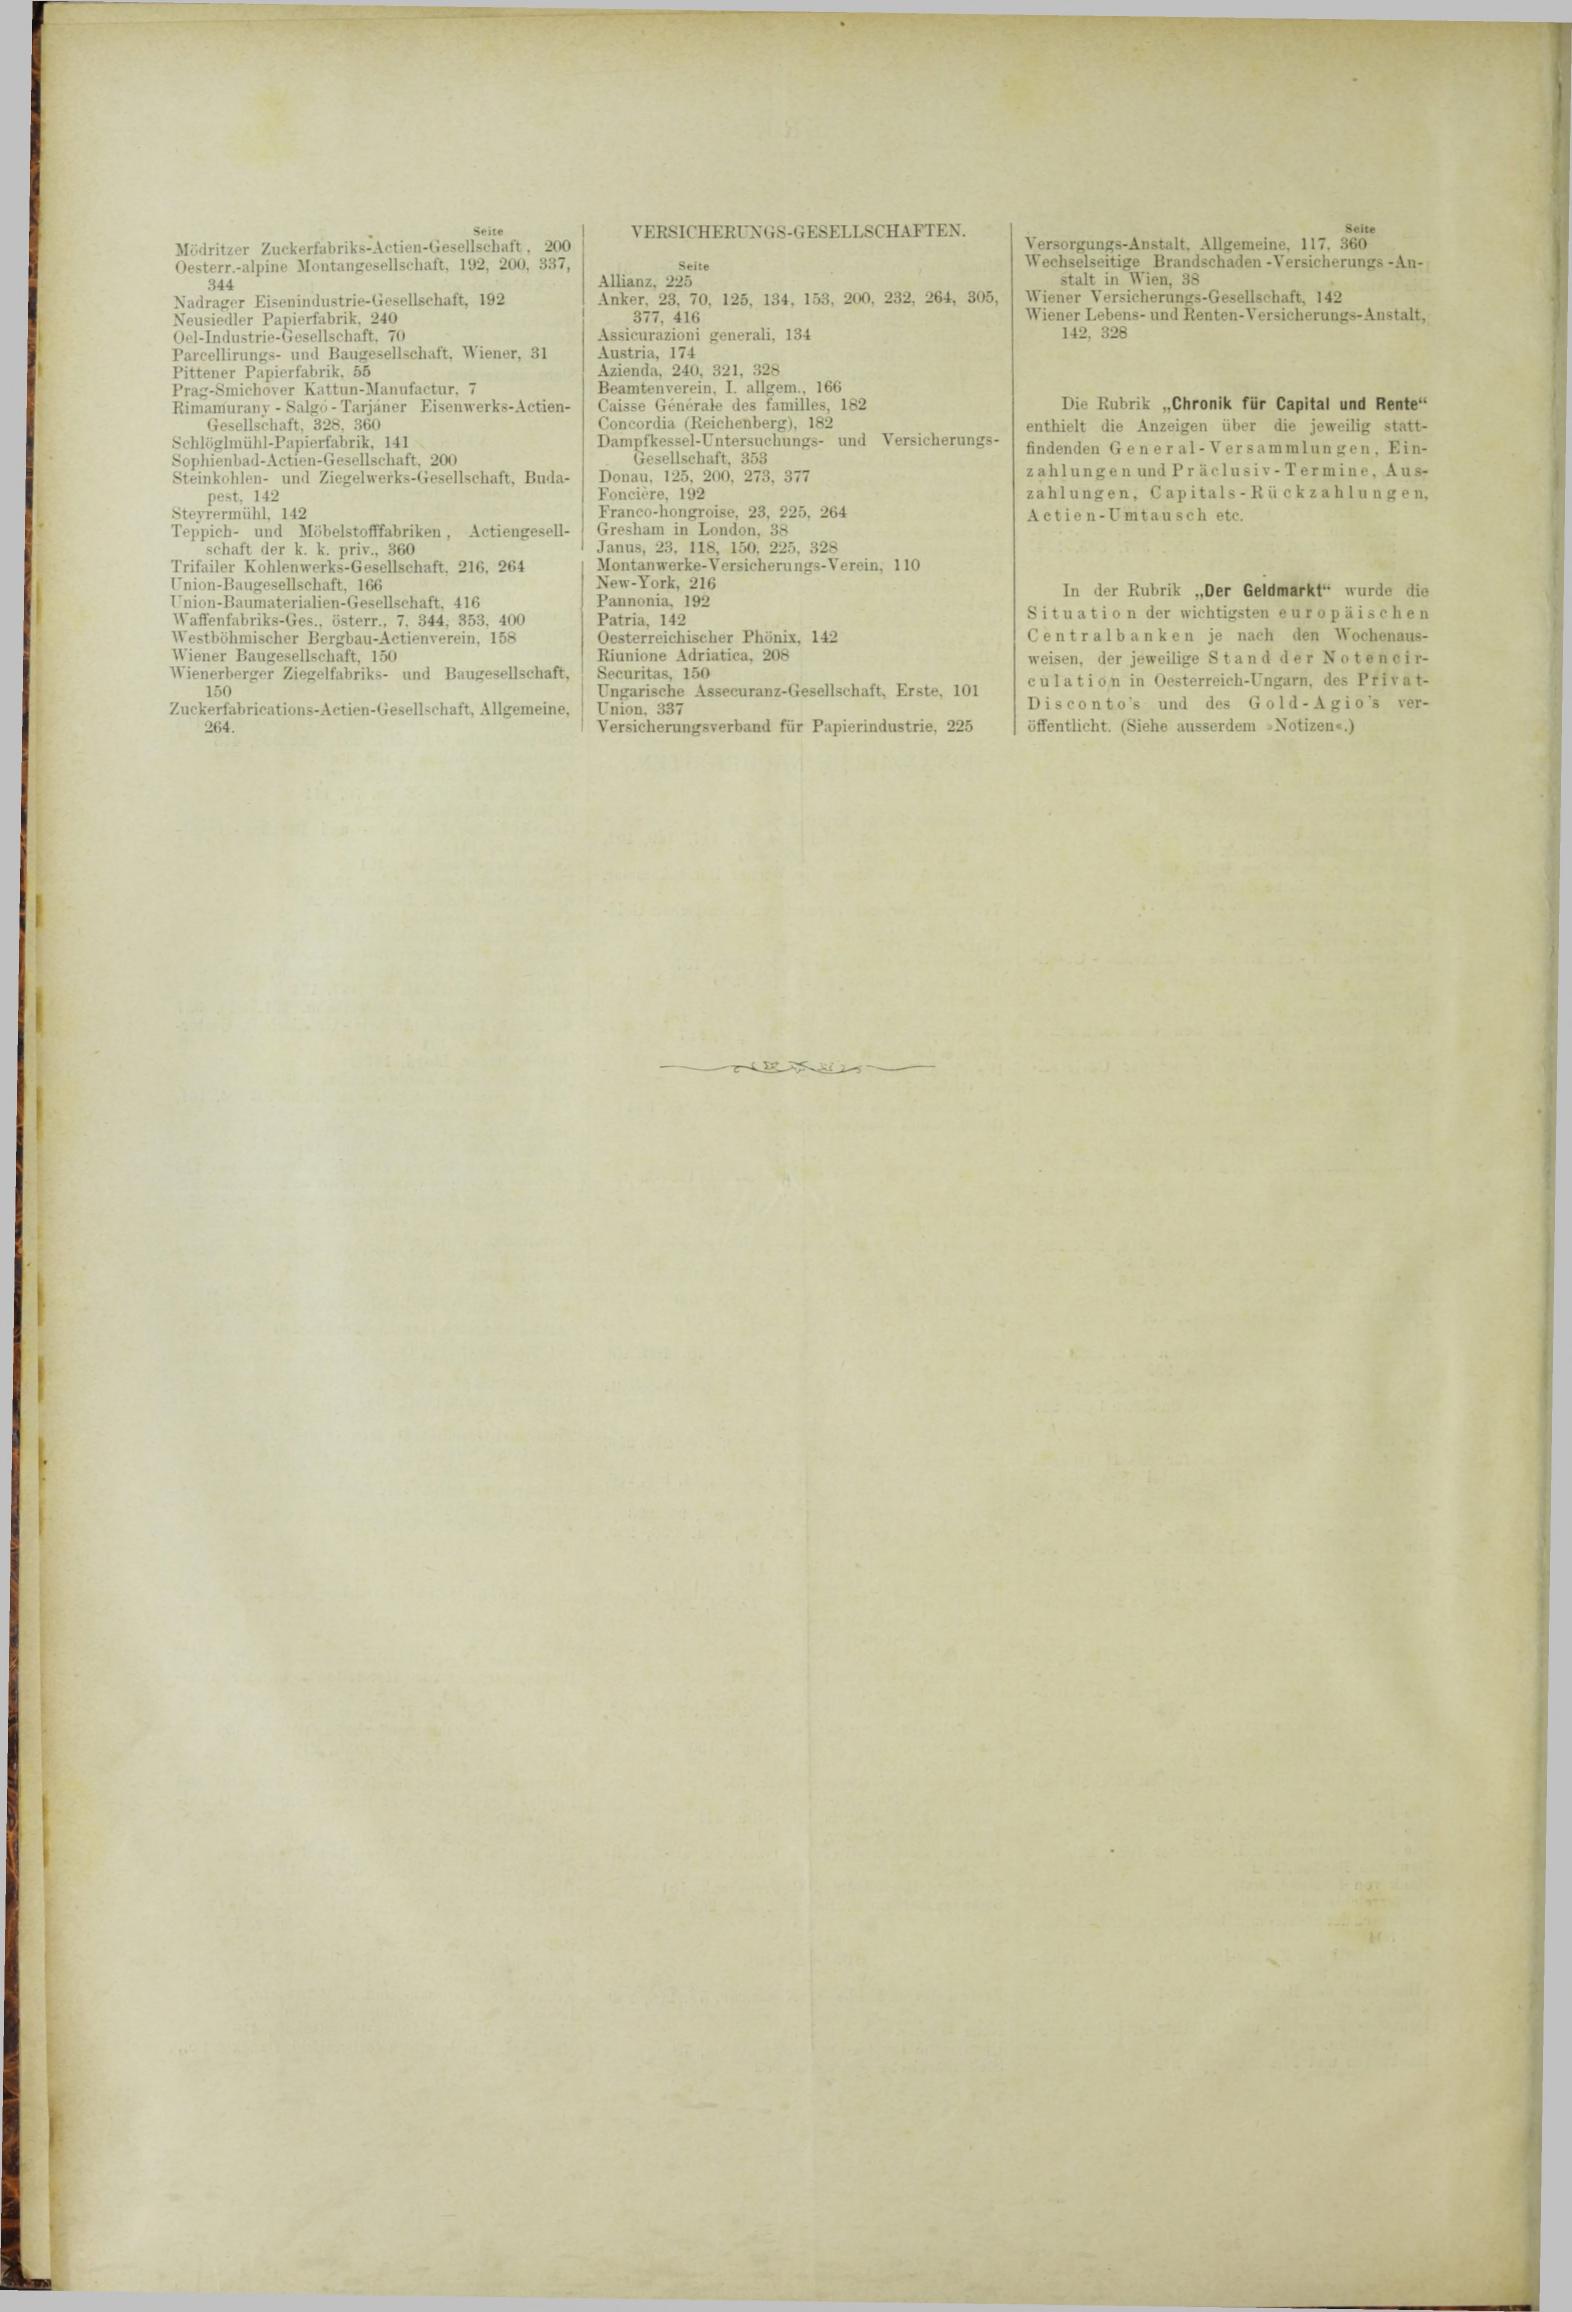 Der Tresor 01.11.1883 - Seite 12